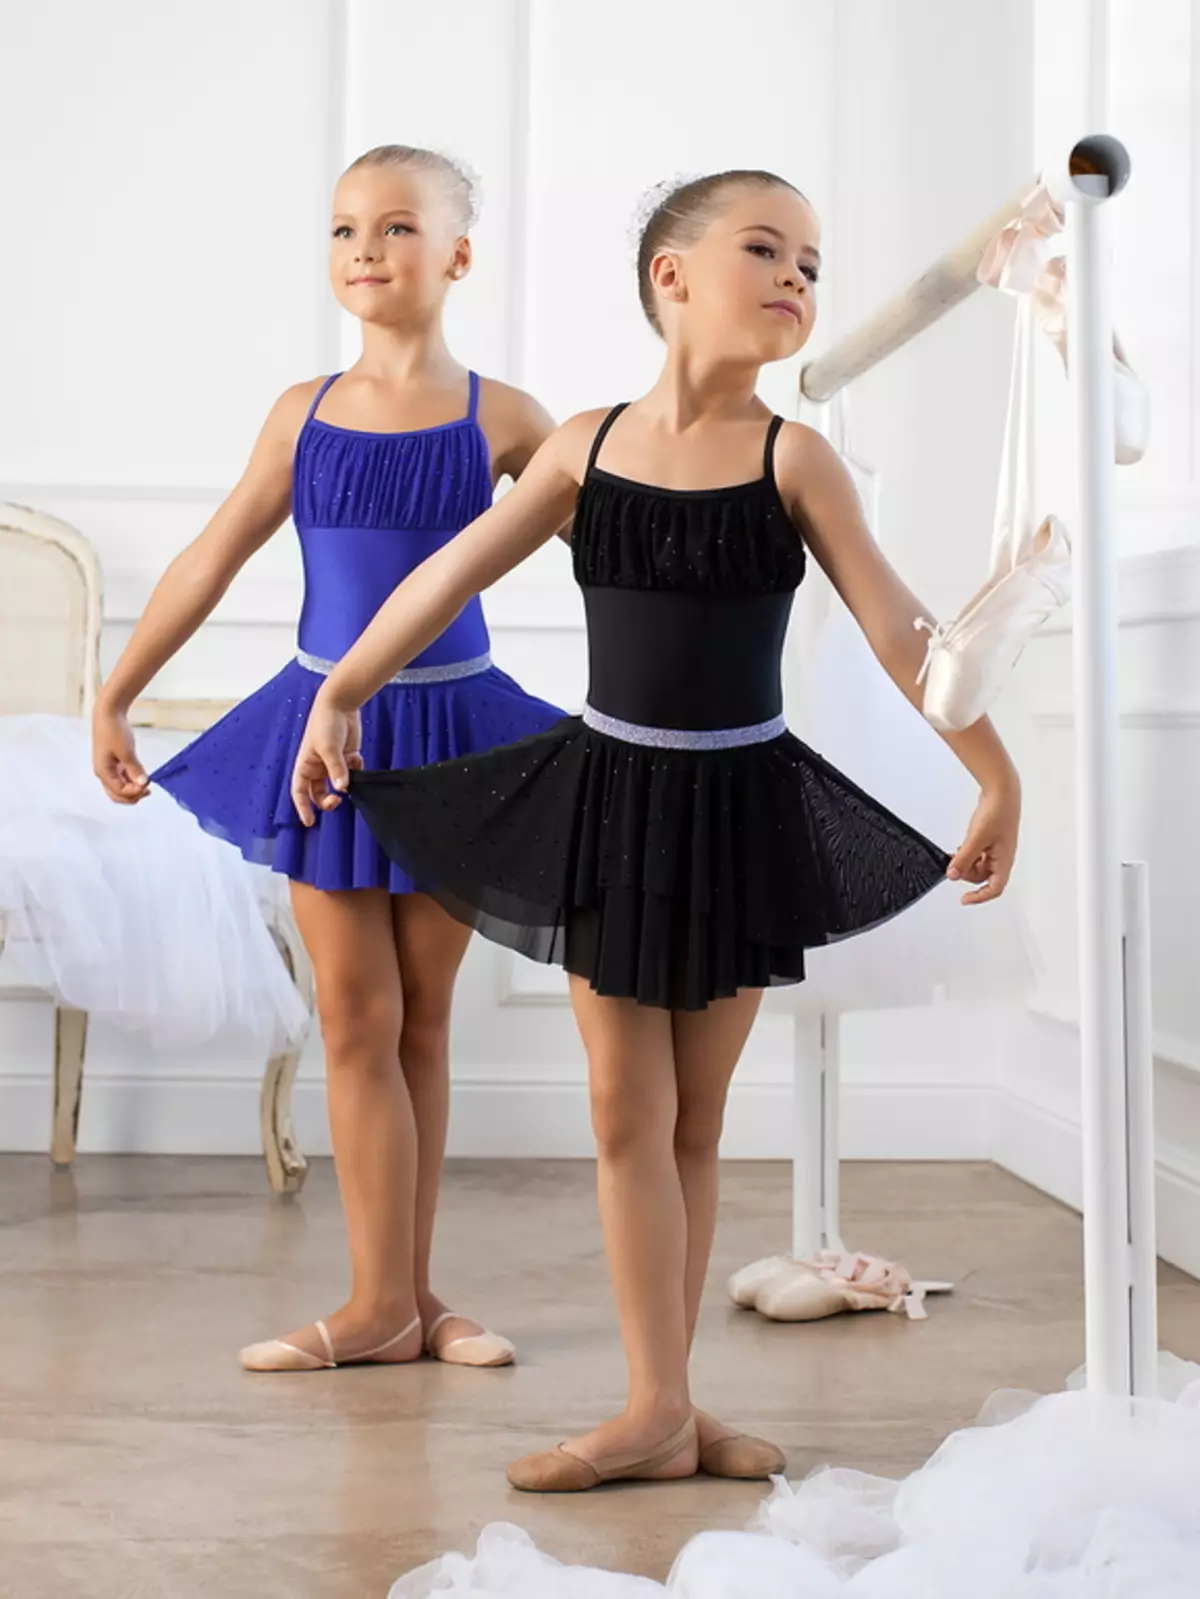 Swimsuit infantil para bailar con saia (45 fotos): Modelos de baile para nenas 13495_21